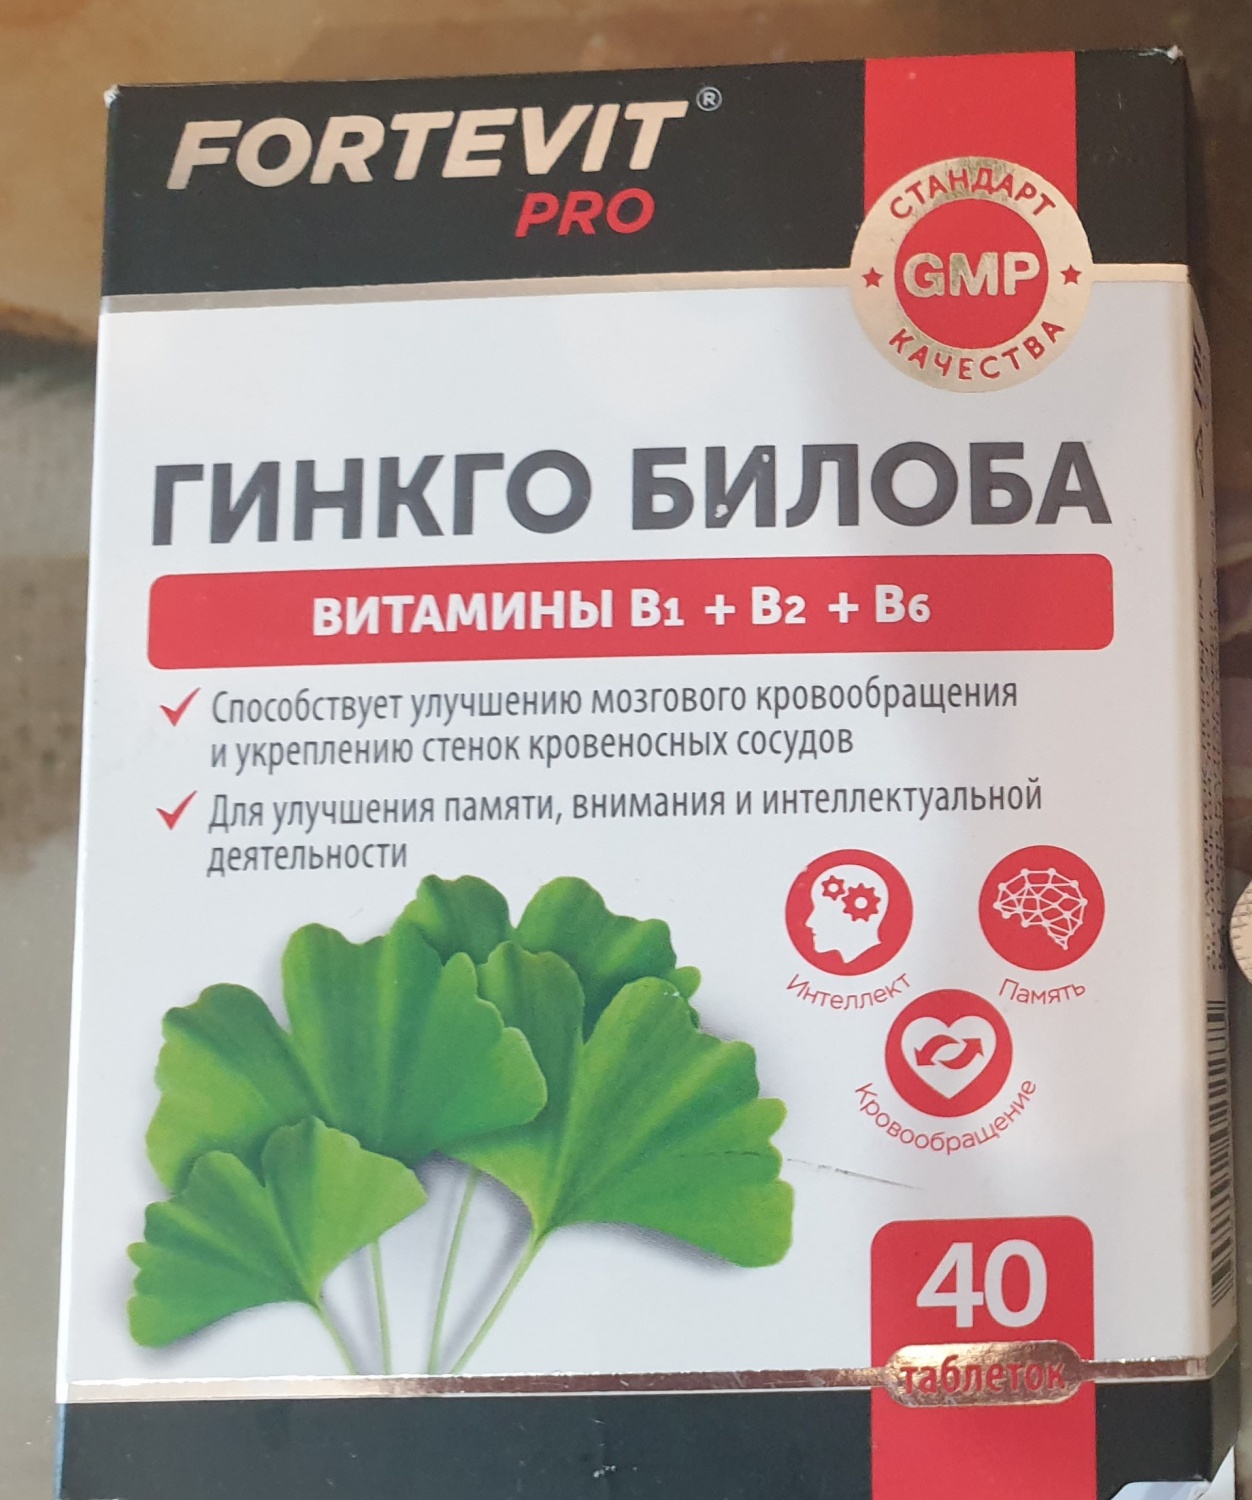 Таблетки Fortevit pro Гинкго билоба витамины +В1+В2+В6 - «Масса энергии .